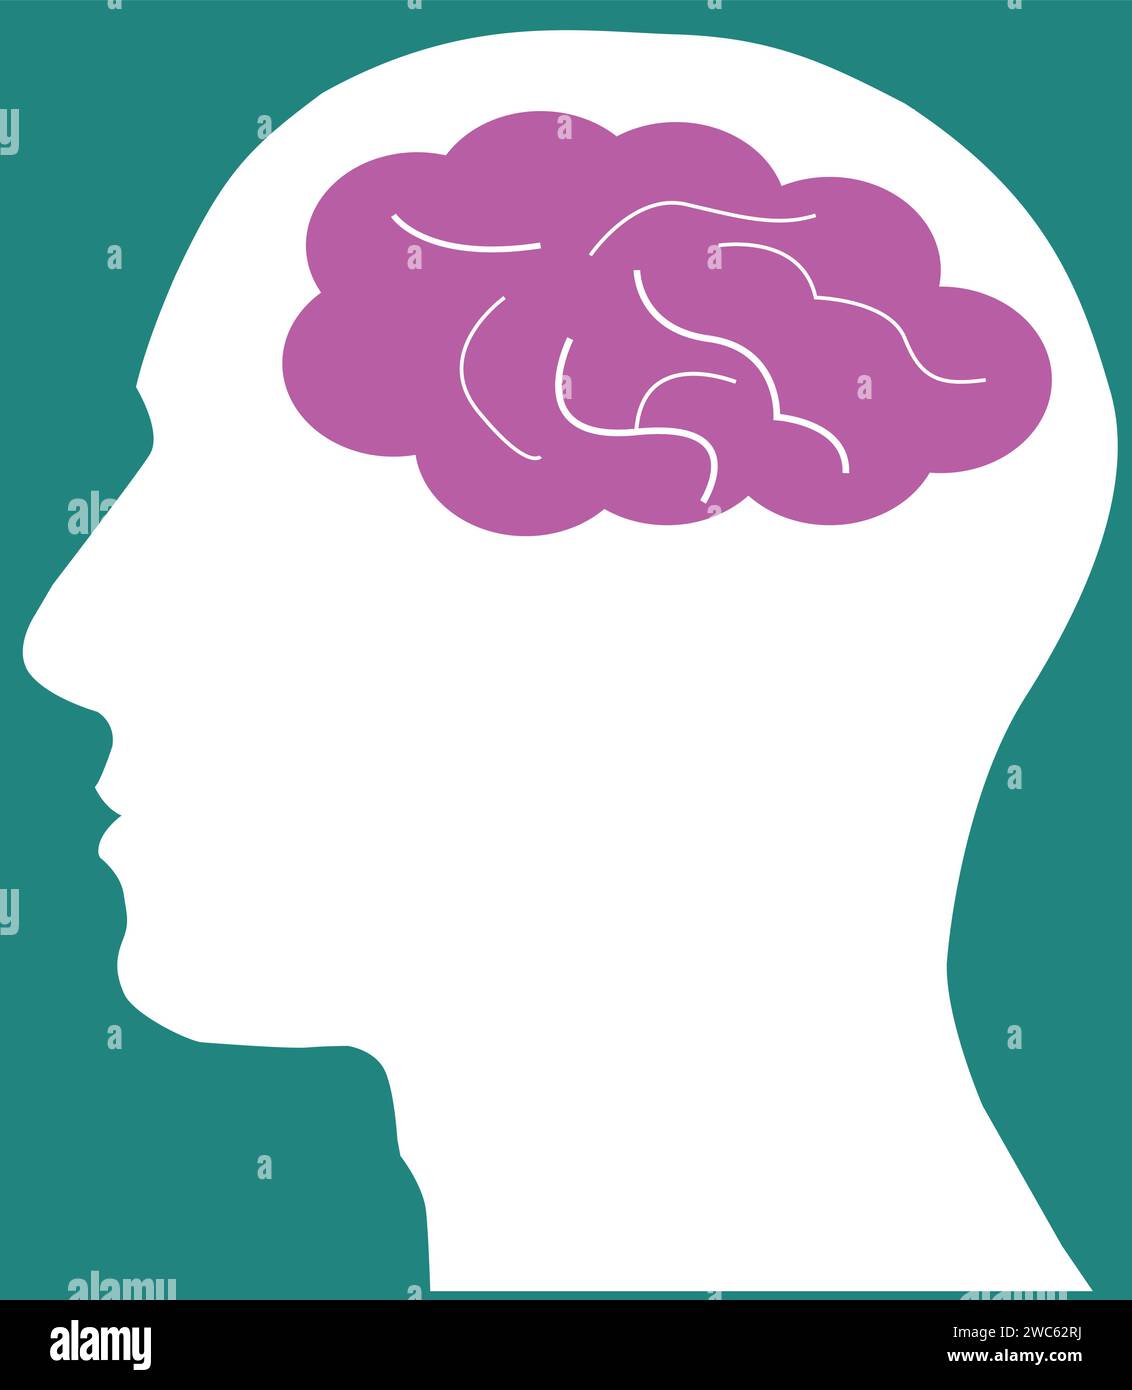 Segno di pensiero del cervello umano, icona del cervello umano nella testa Illustrazione Vettoriale